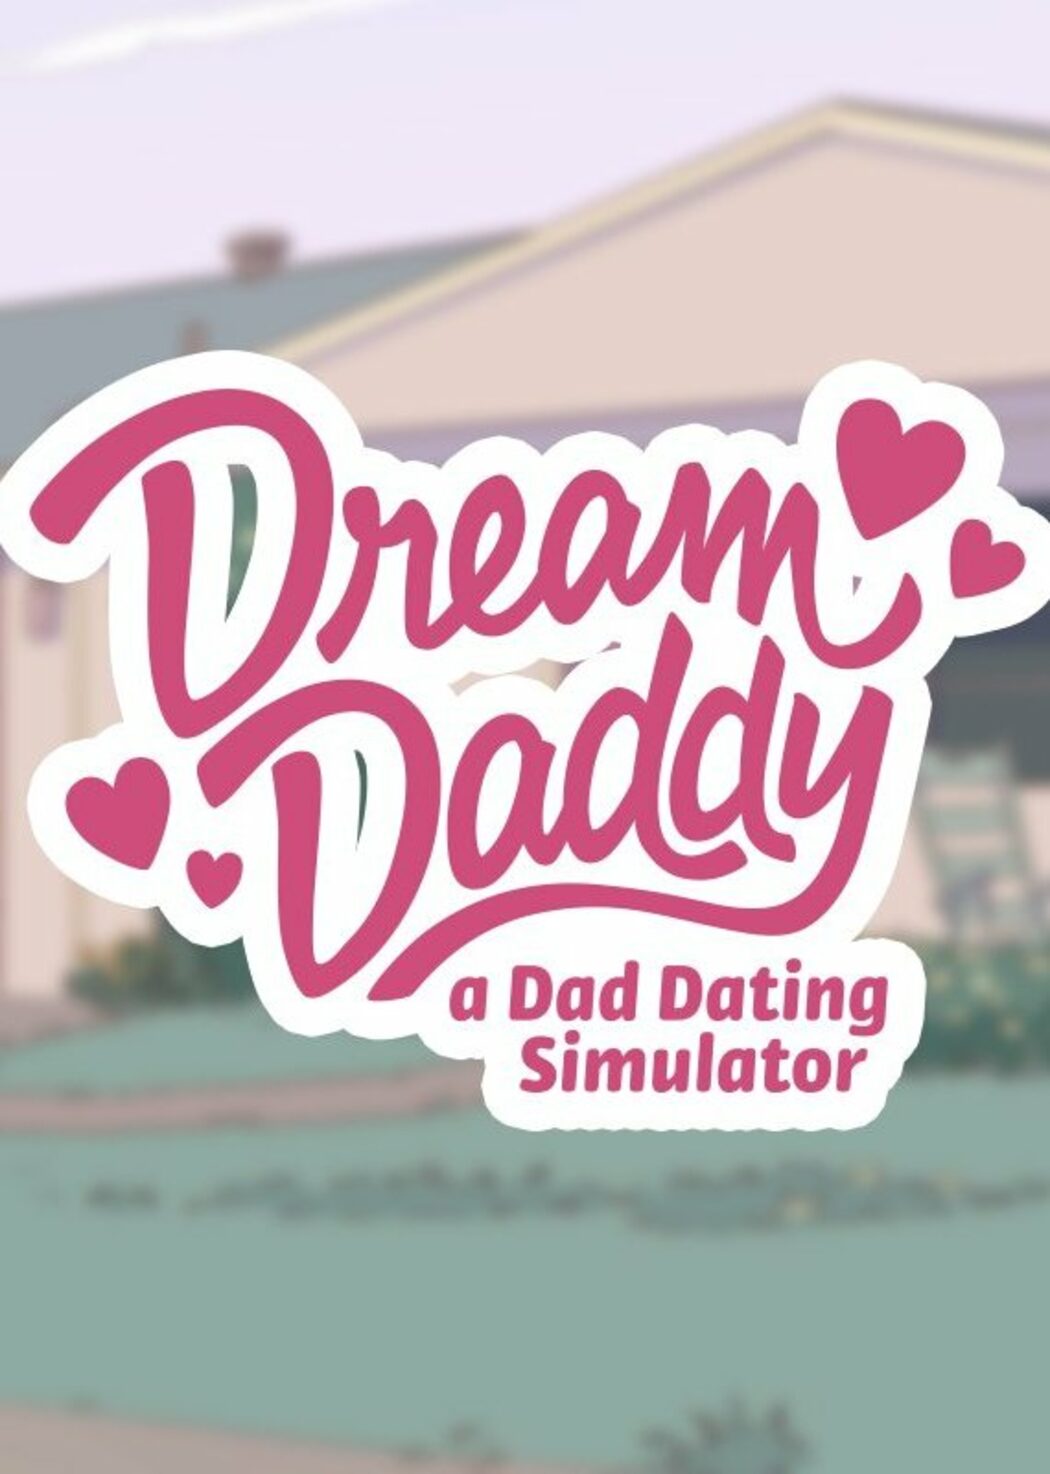 Steam dream daddy фото 84